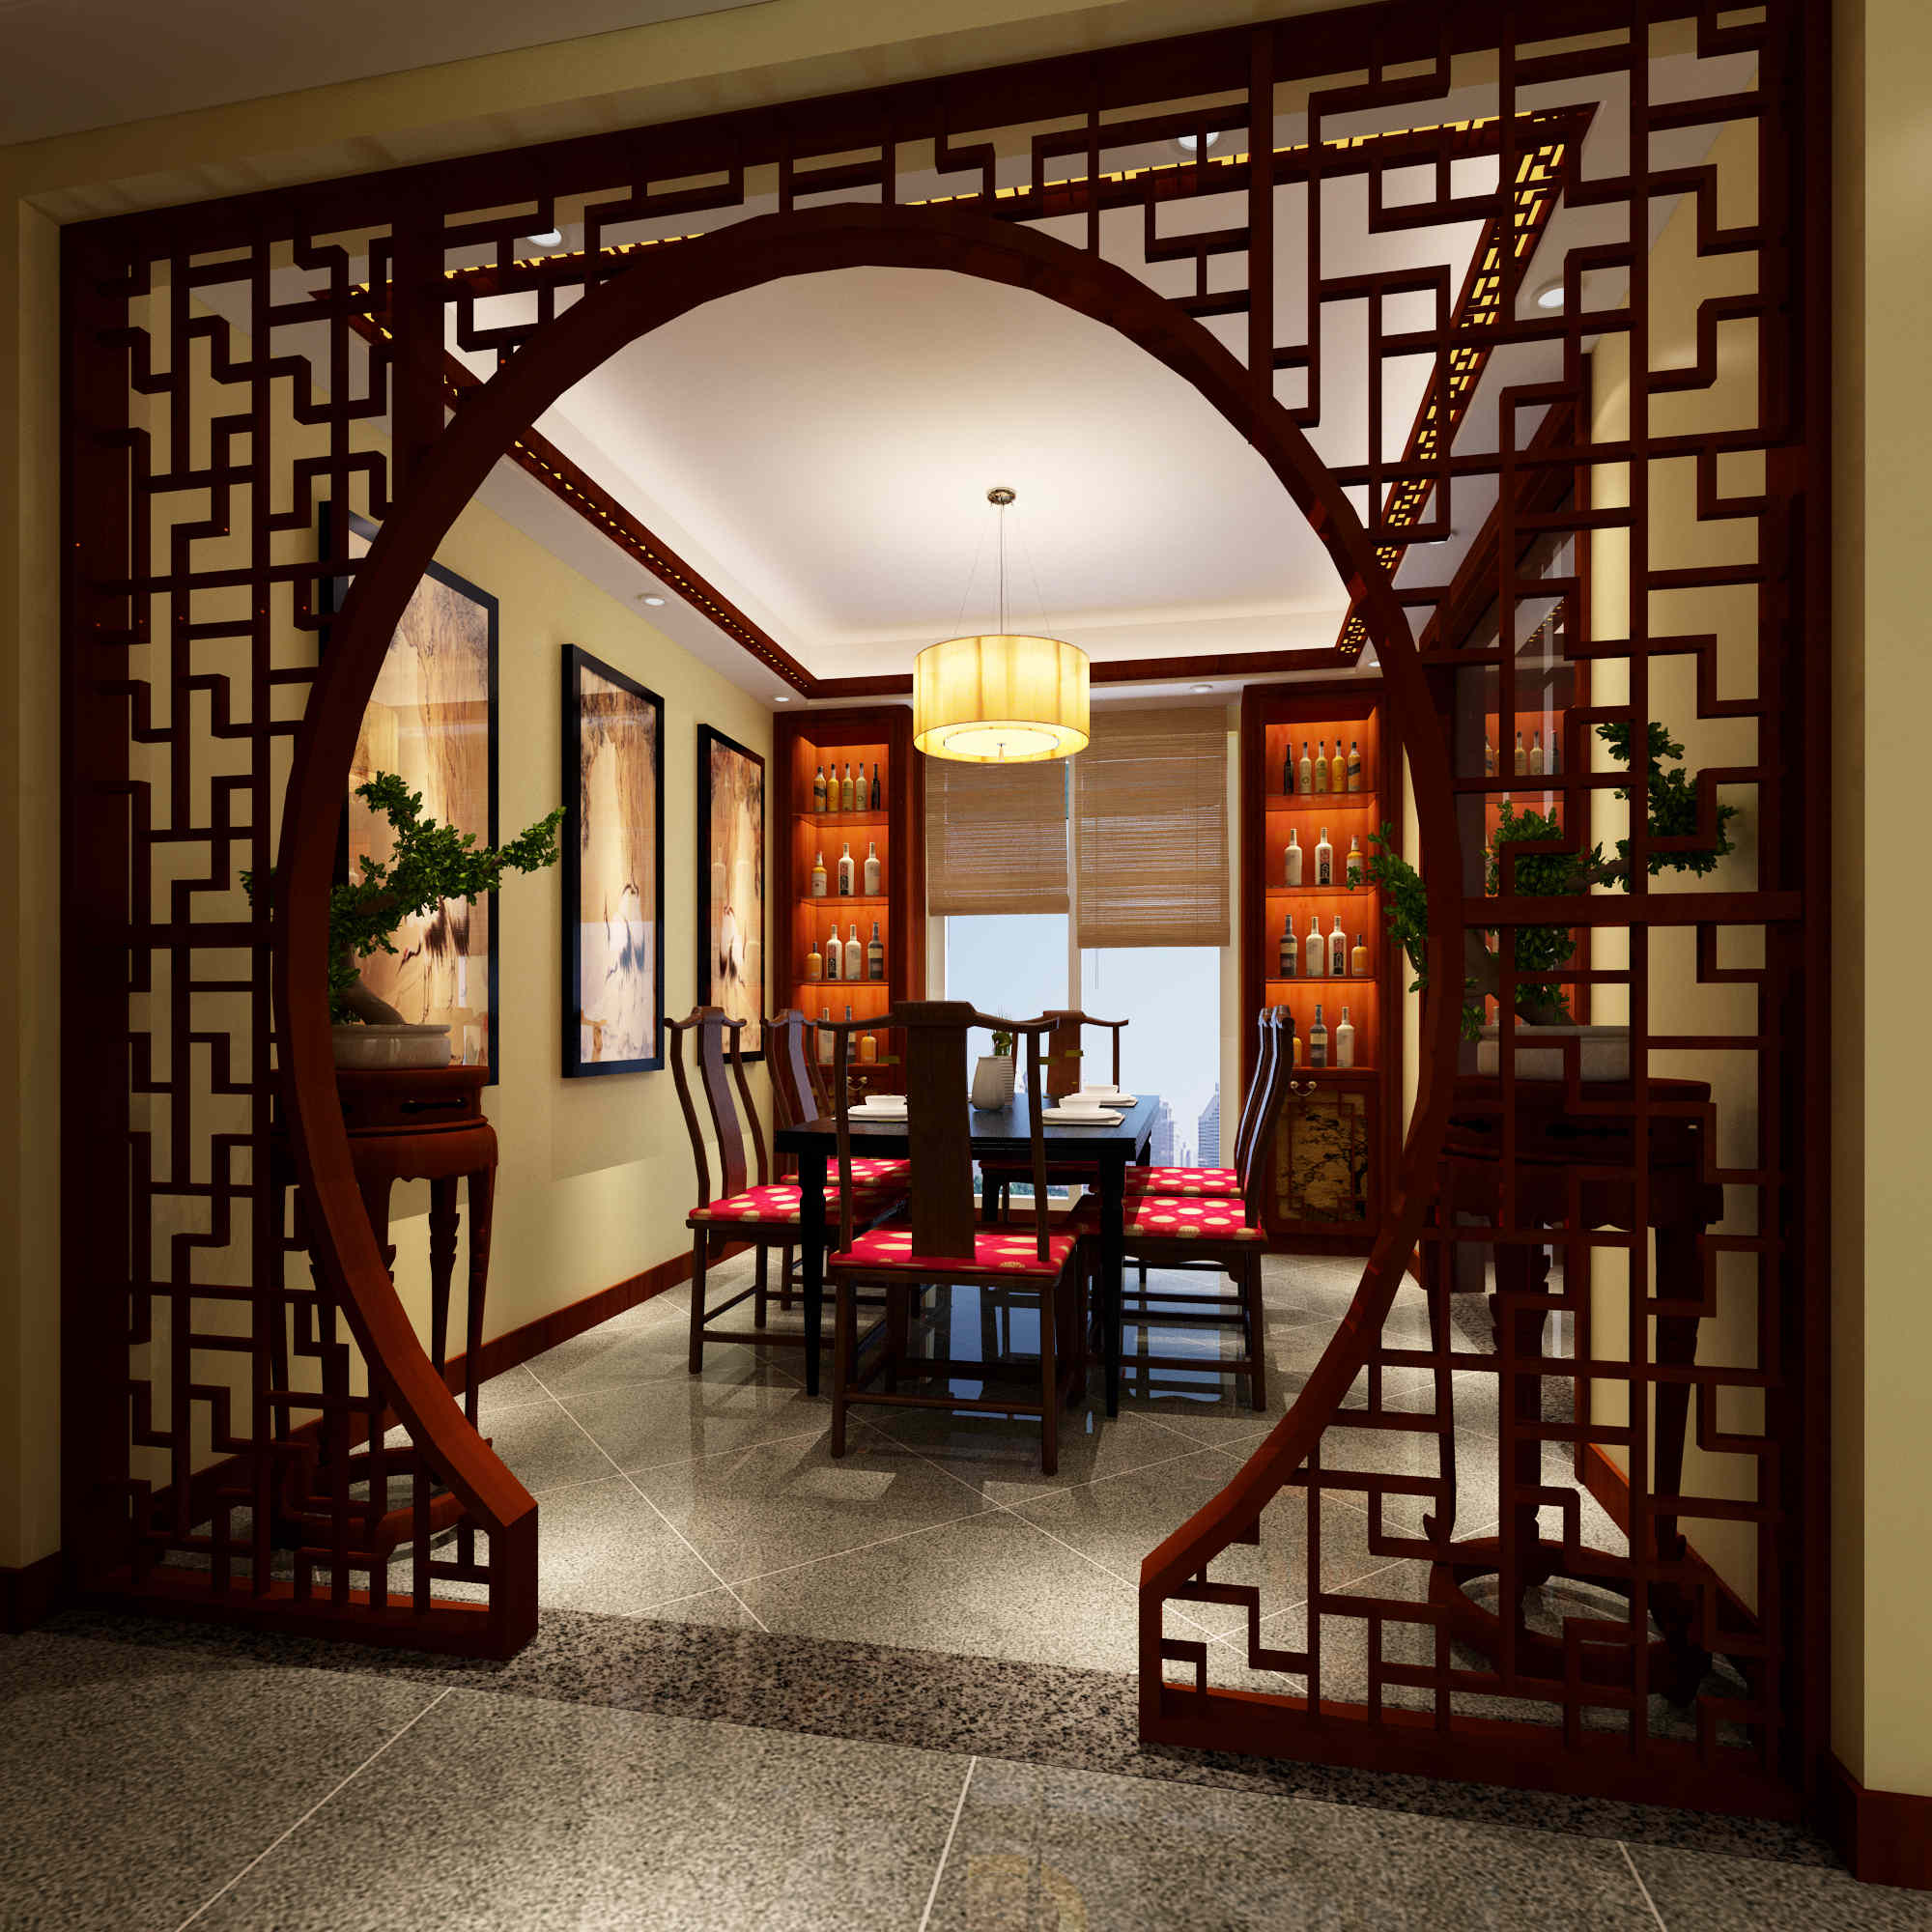 中式古典风格的室内设计,是在室内布置,线形,色调及家具,陈设的造型等